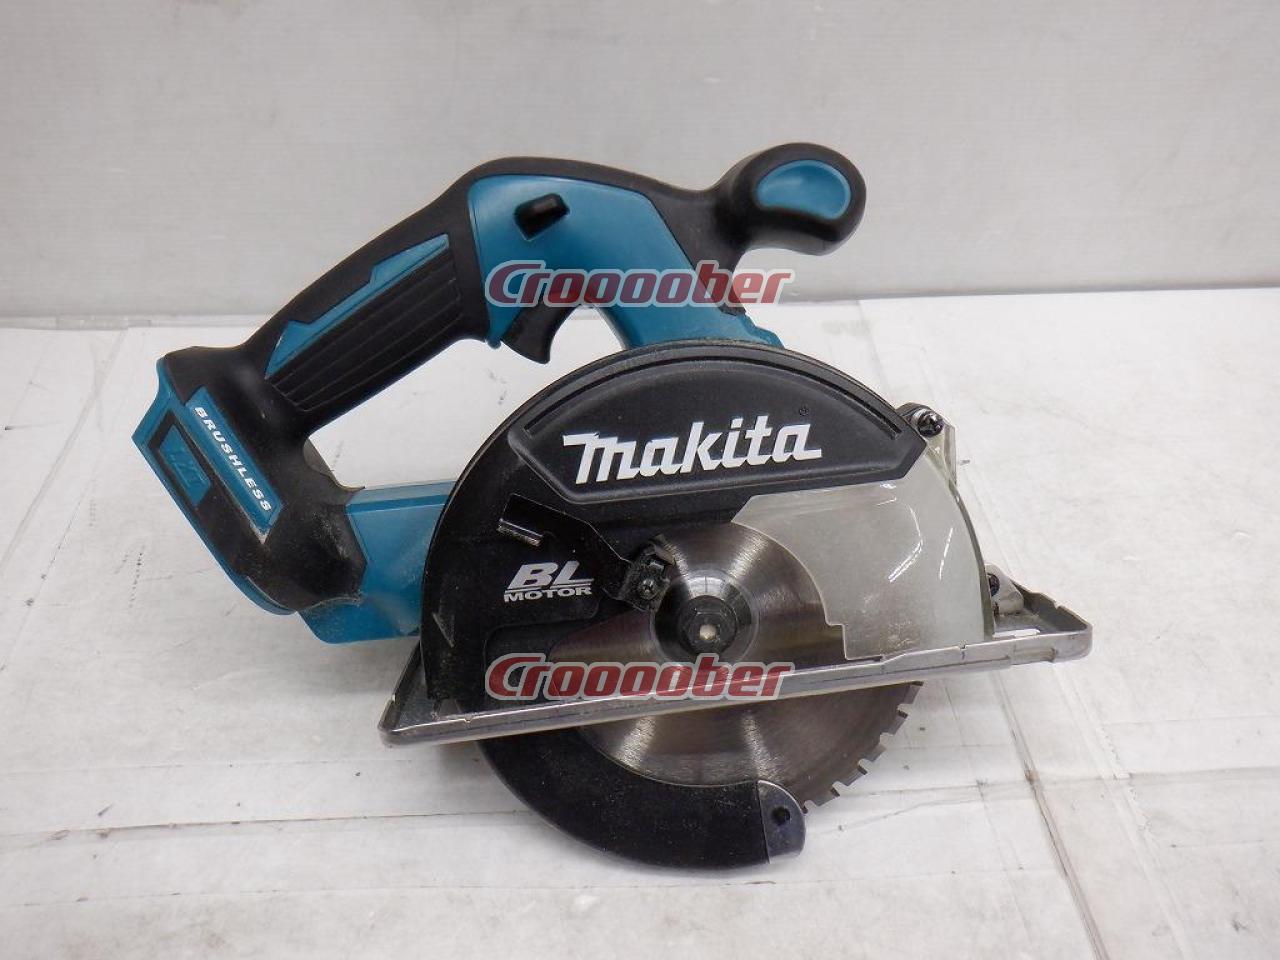 WG】Makita(マキタ) 150mm充電式チップソーカッター 品番:CS551D